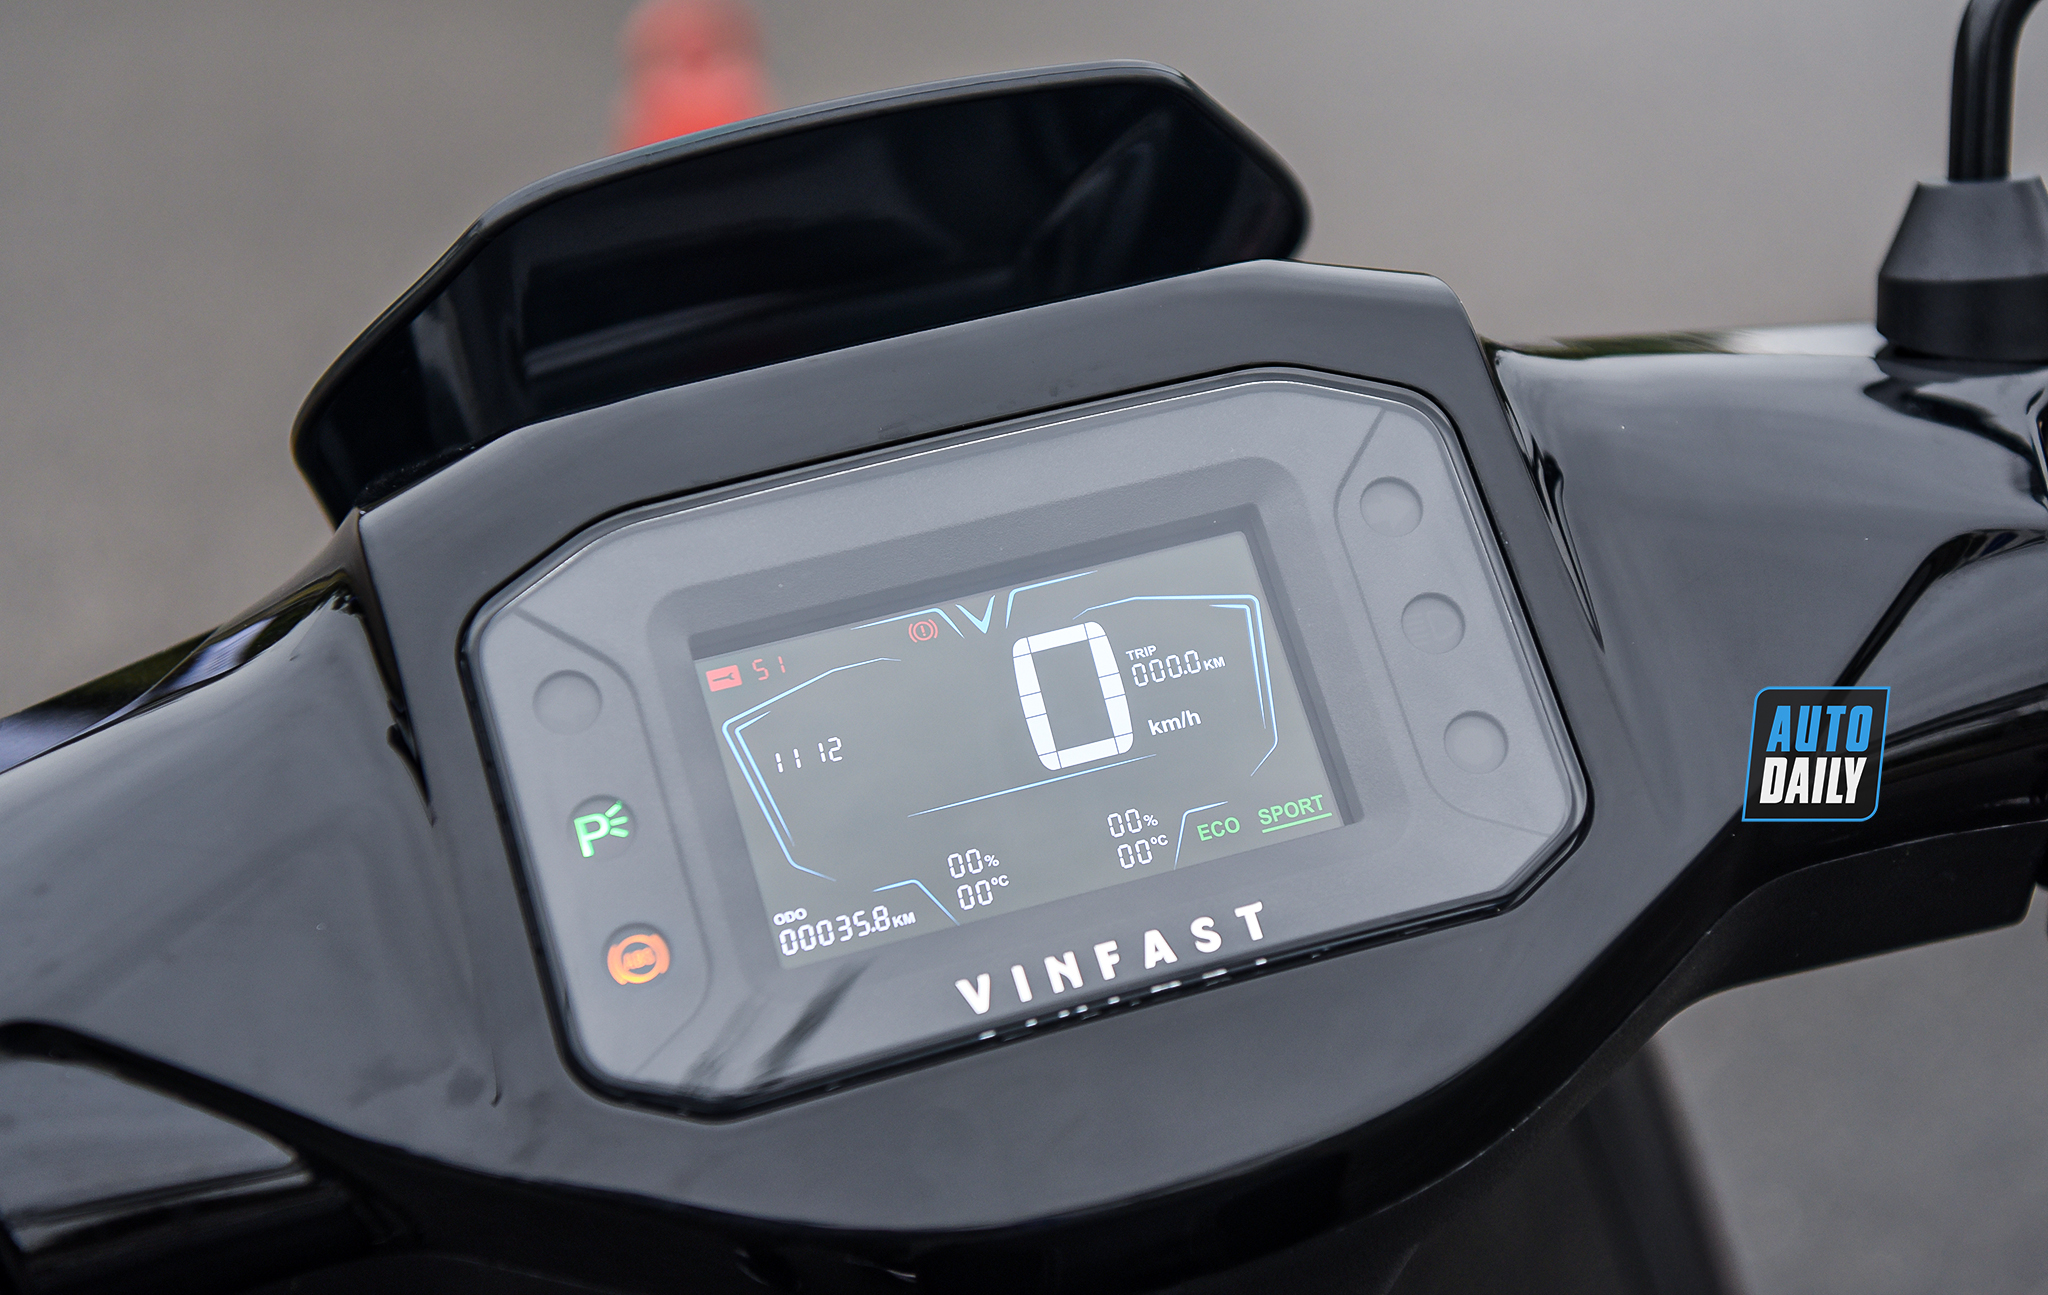 Chi tiết VinFast Theon - Xe máy điện cao cấp nhiều công nghệ tiên tiến dsc-8786-copy.jpg